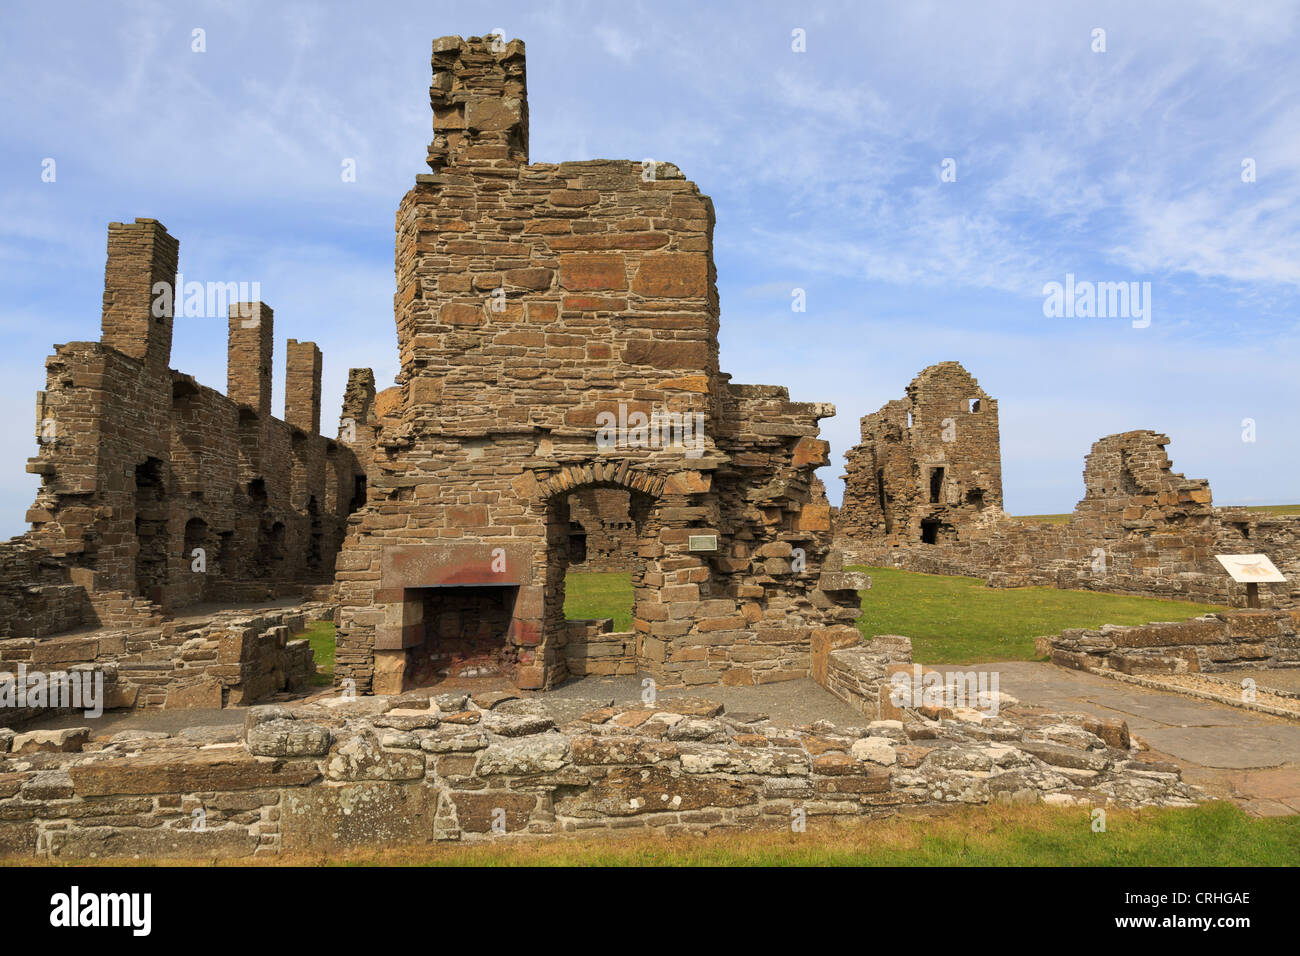 Zerstörten Überreste des 16. Jahrhunderts Earl's Palace gebaut von Herrn Robert Stewart. Birsay Orkney Inseln Schottland Großbritannien Stockfoto